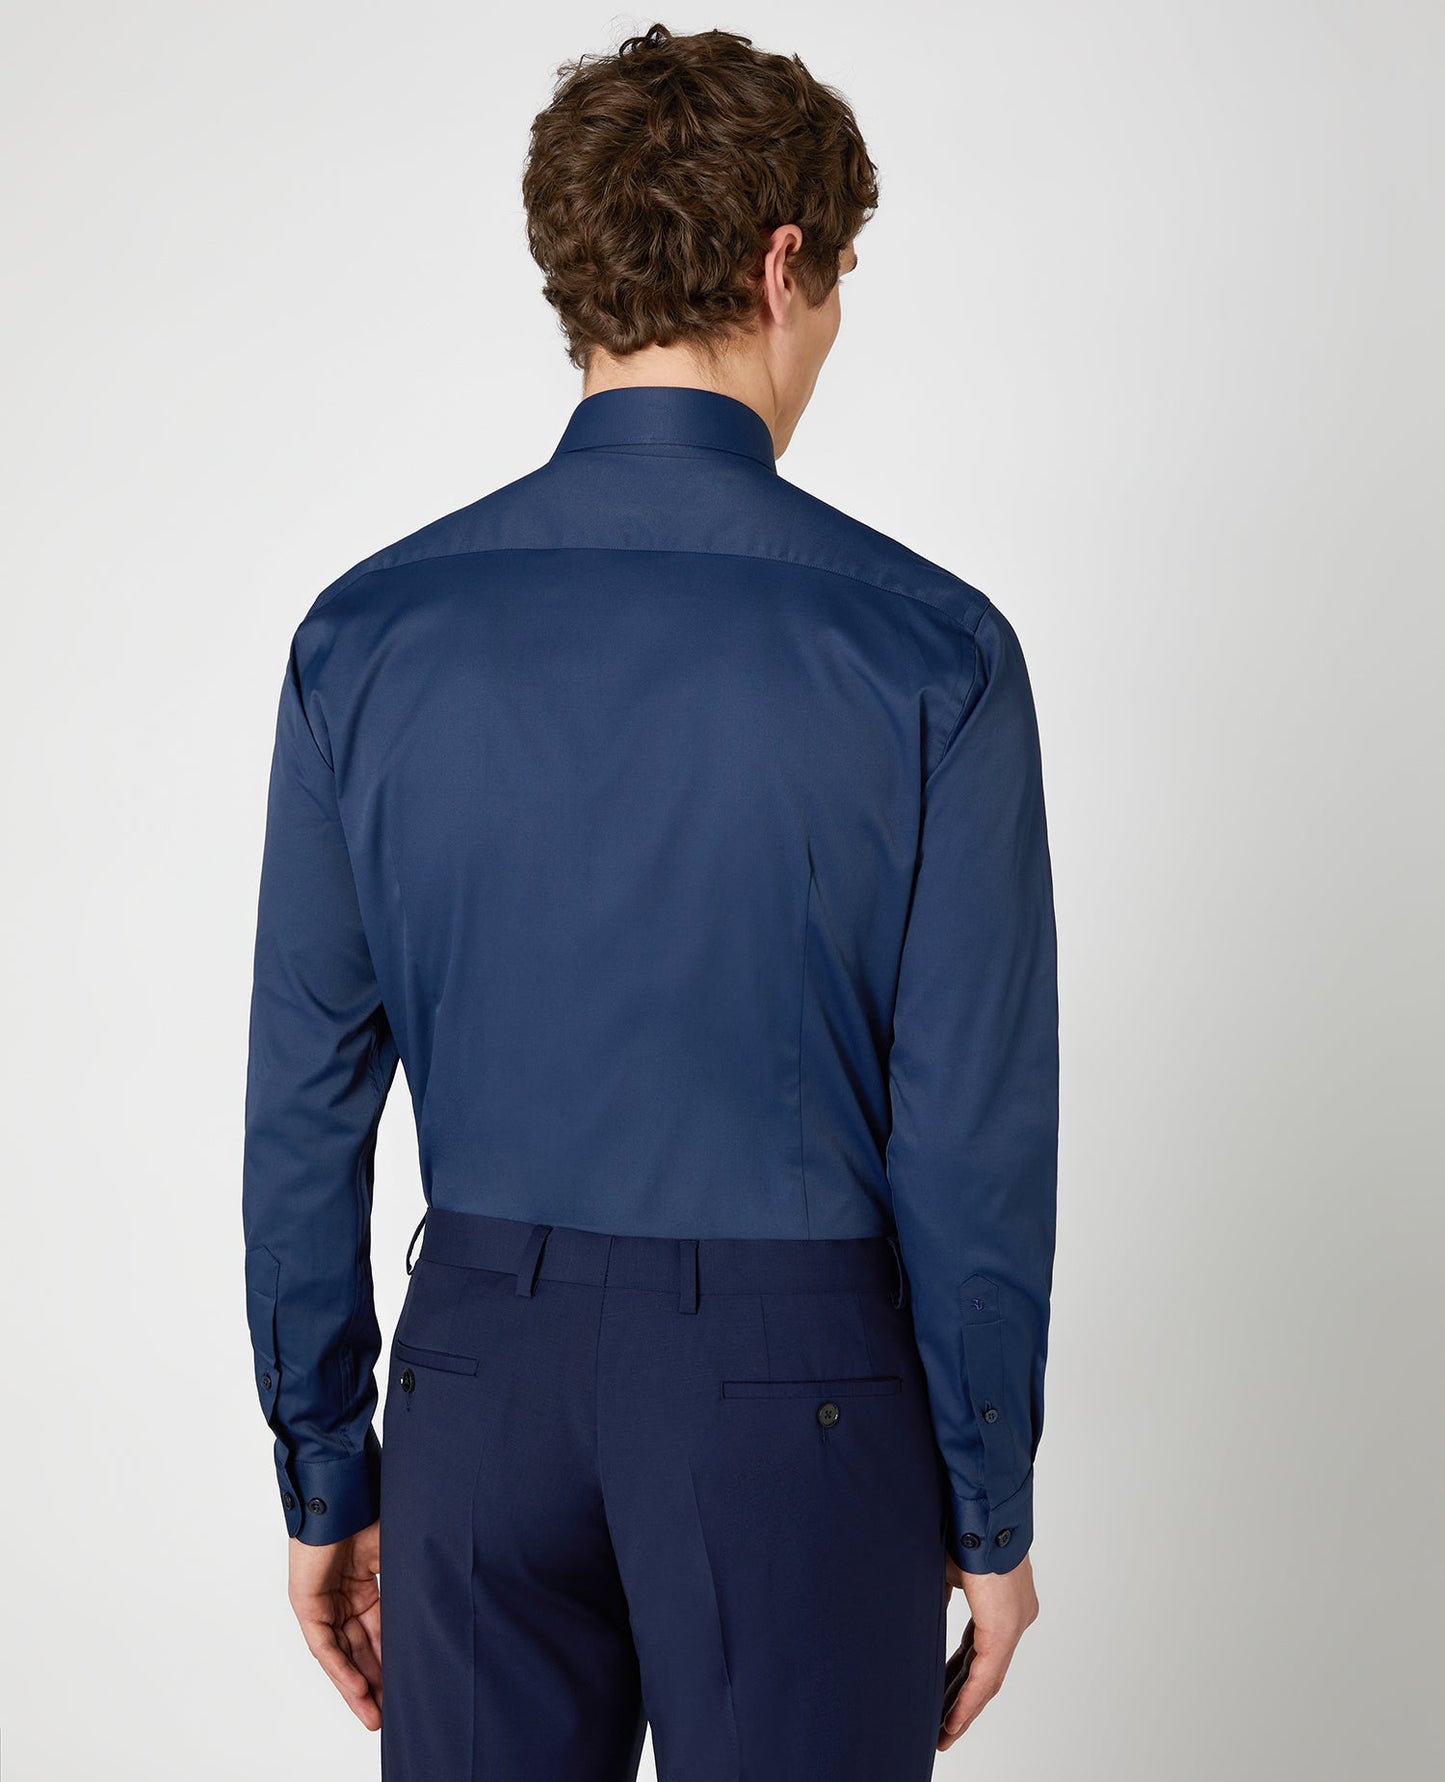 Remus Uomo Kirk Slim Fit Formal Shirt - Matt O'Brien Fashions